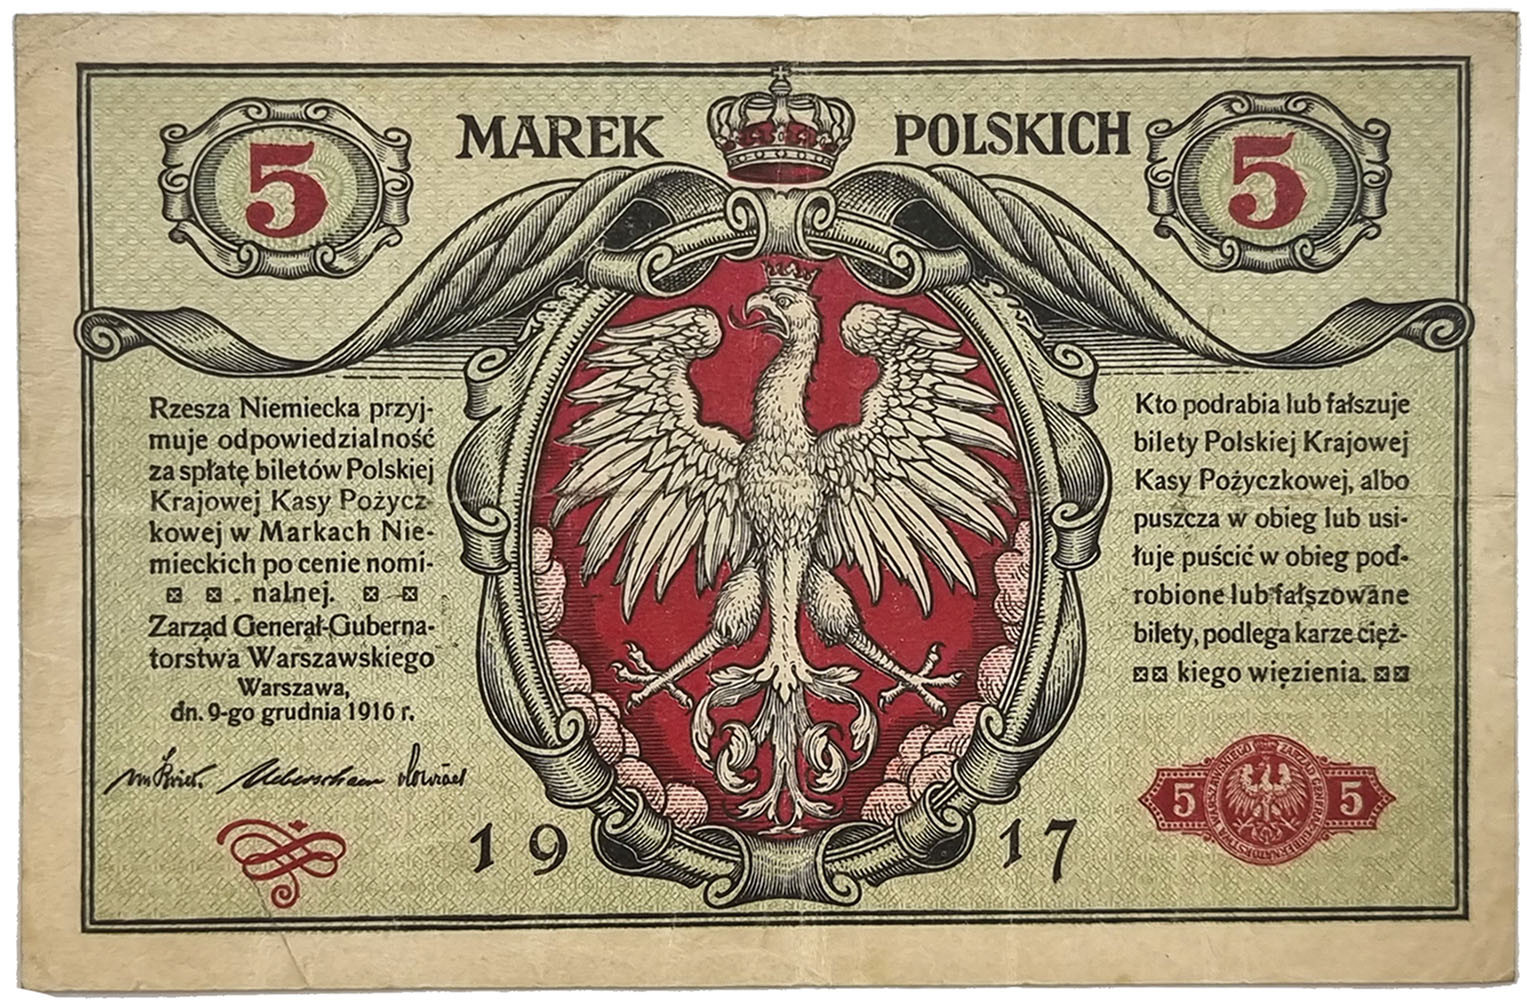 5 marek polskich 1916 seria B, Generał, biletów